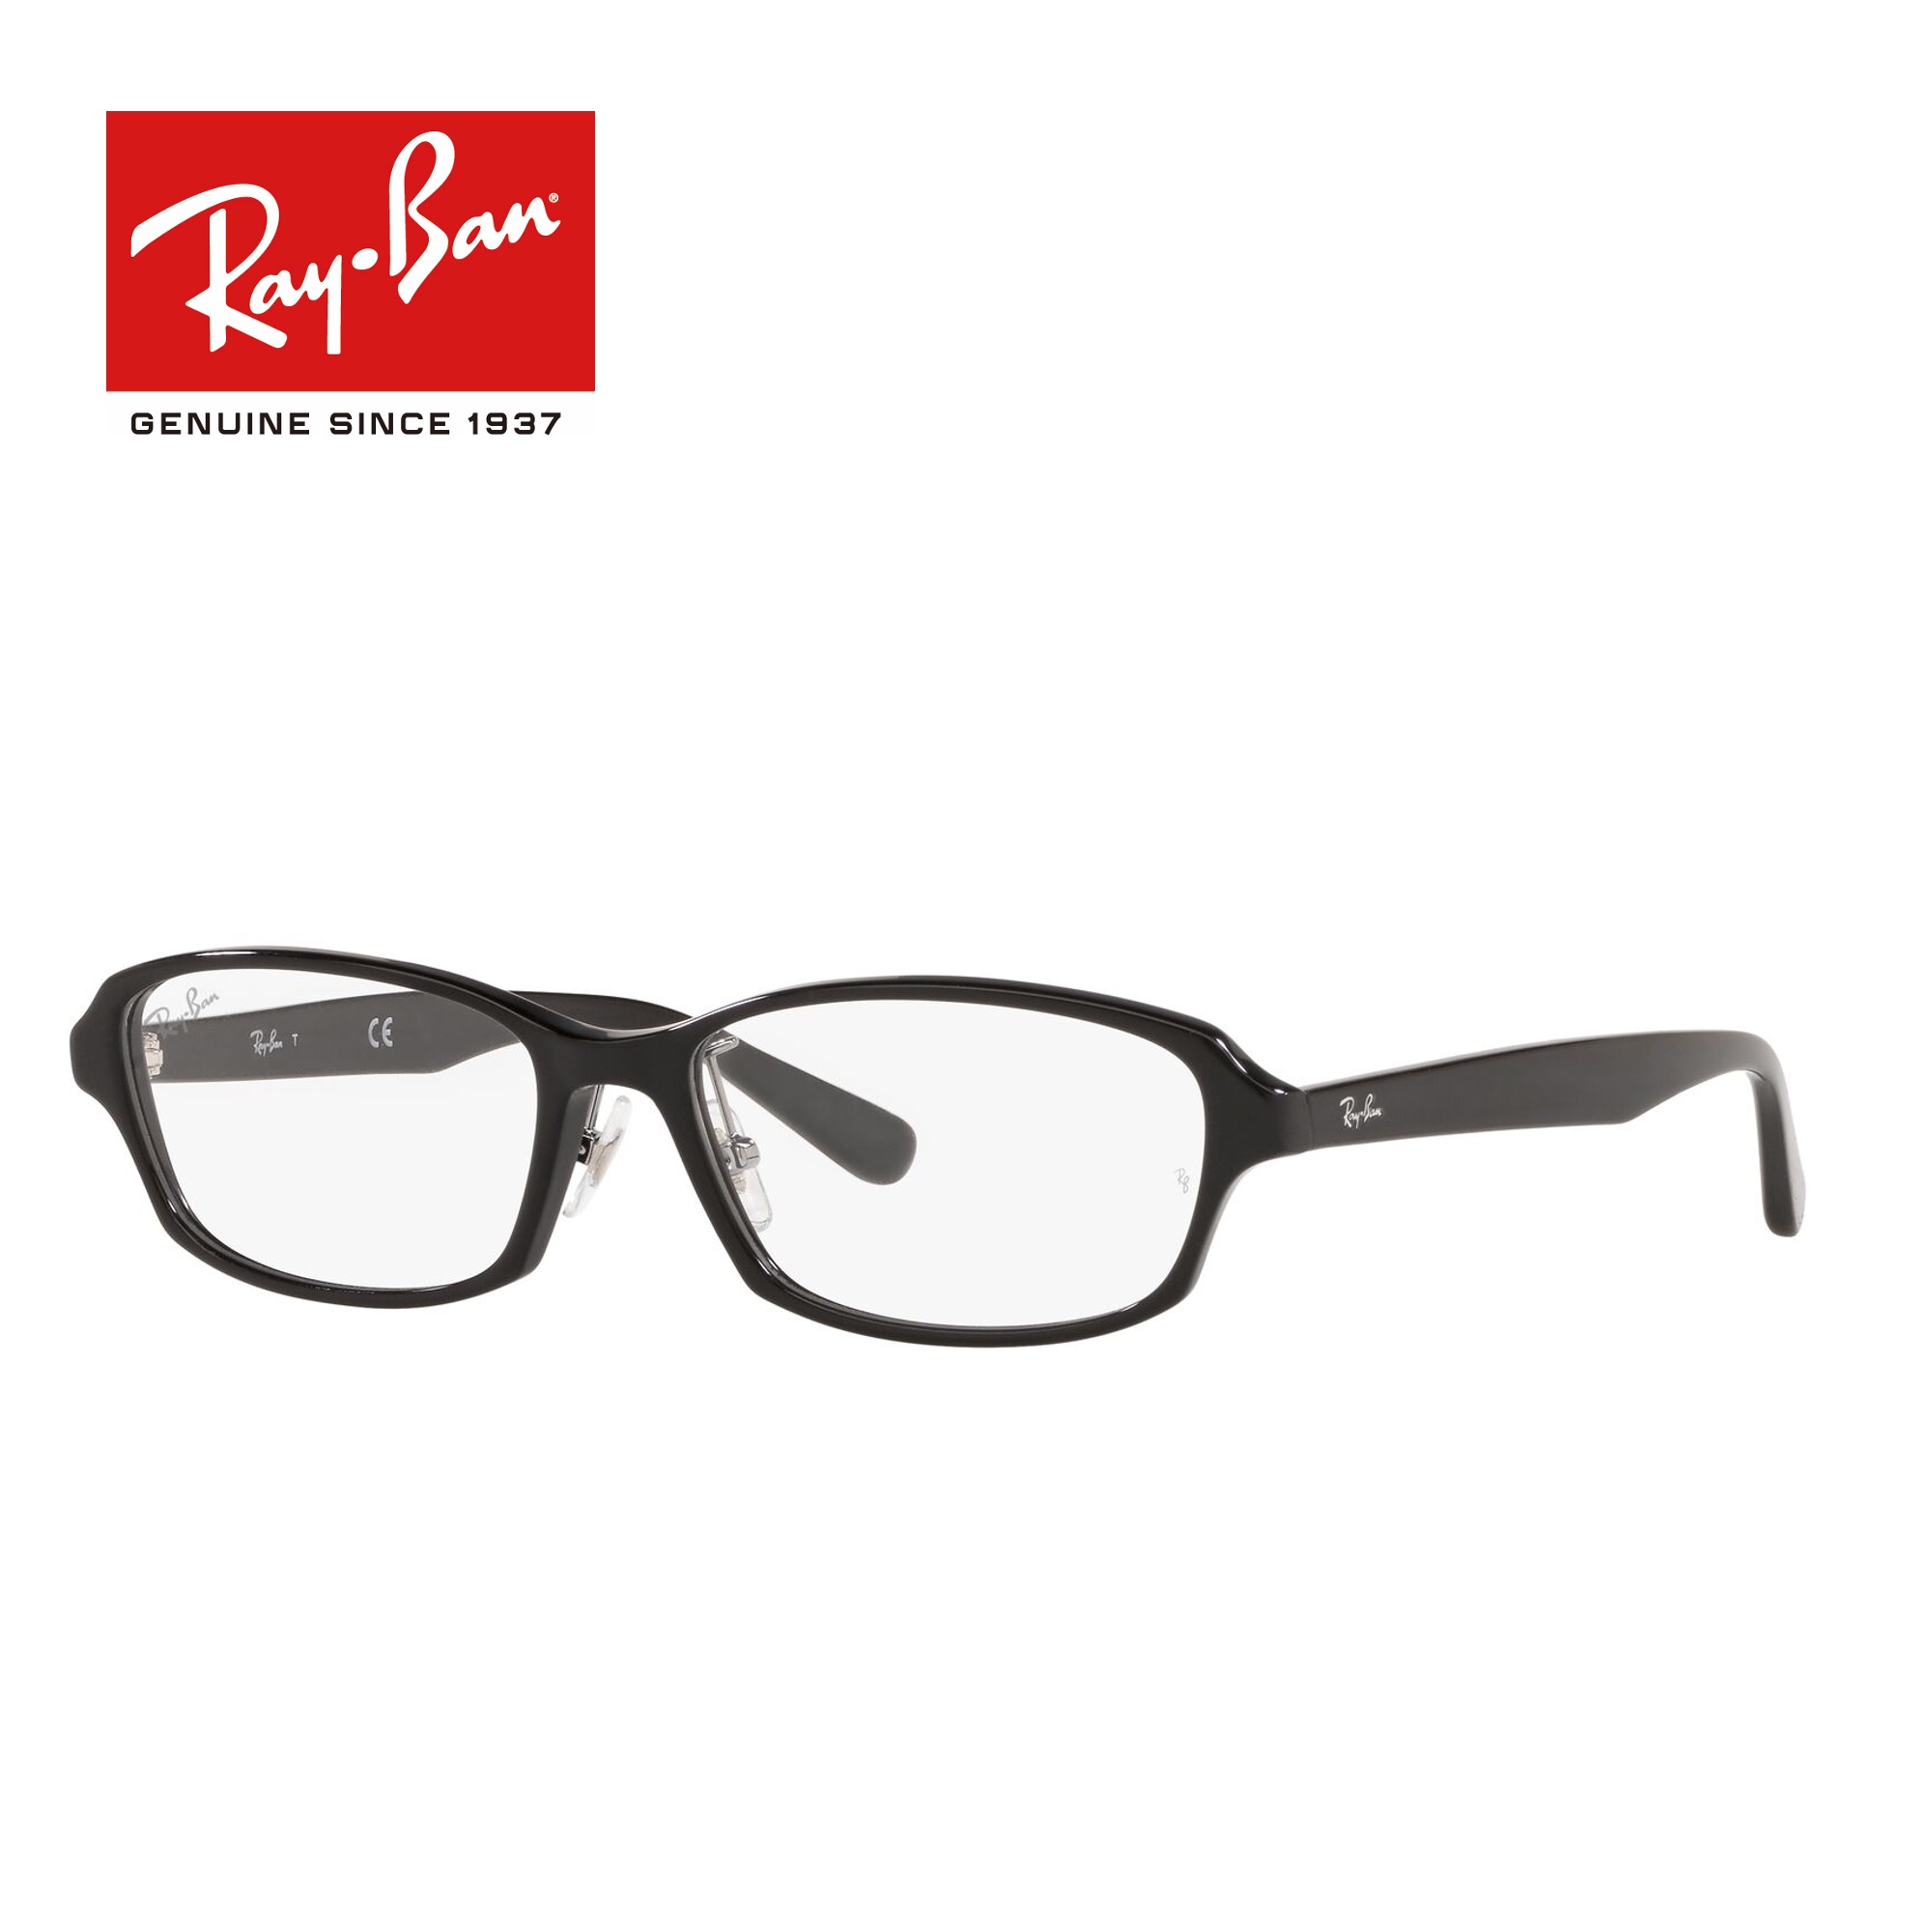 【国内正規品】人気 レイバン メガネ フレーム Ray-Ban RX5385D 2000 伊達メガネ 度付き ブルーライト カット 眼鏡 レンズ付 キャンペーン